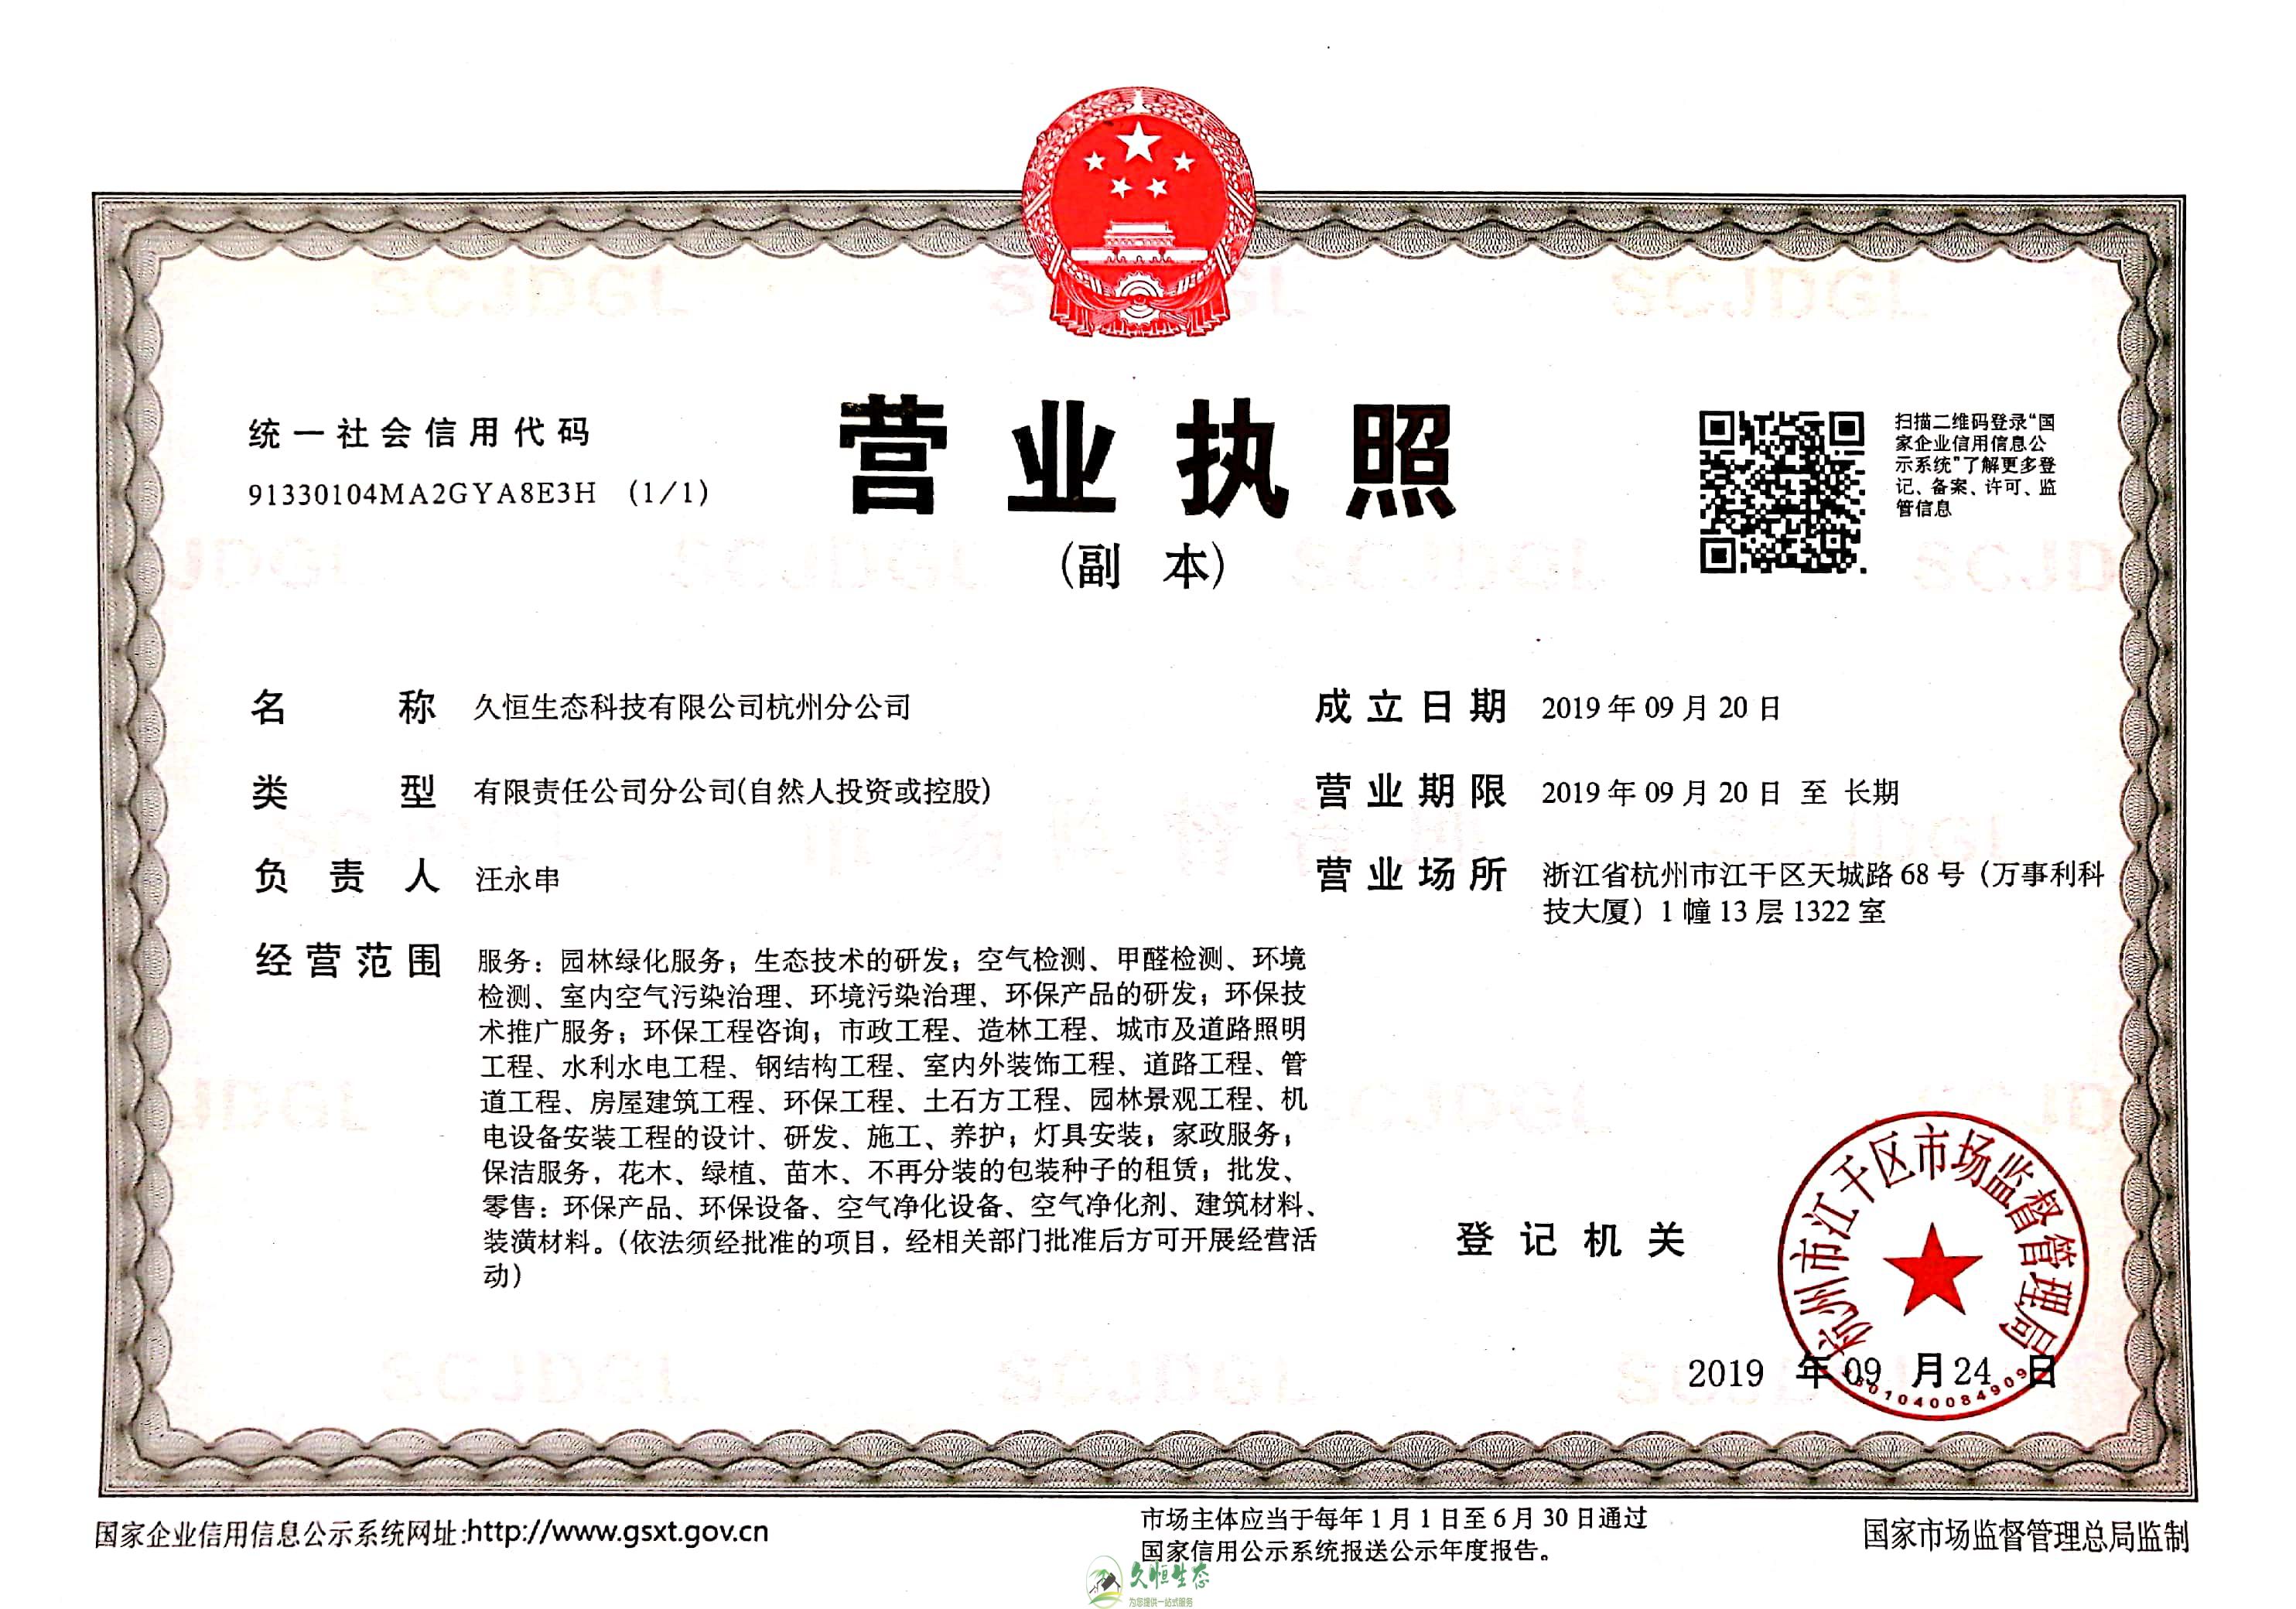 越城久恒生态杭州分公司营业执照